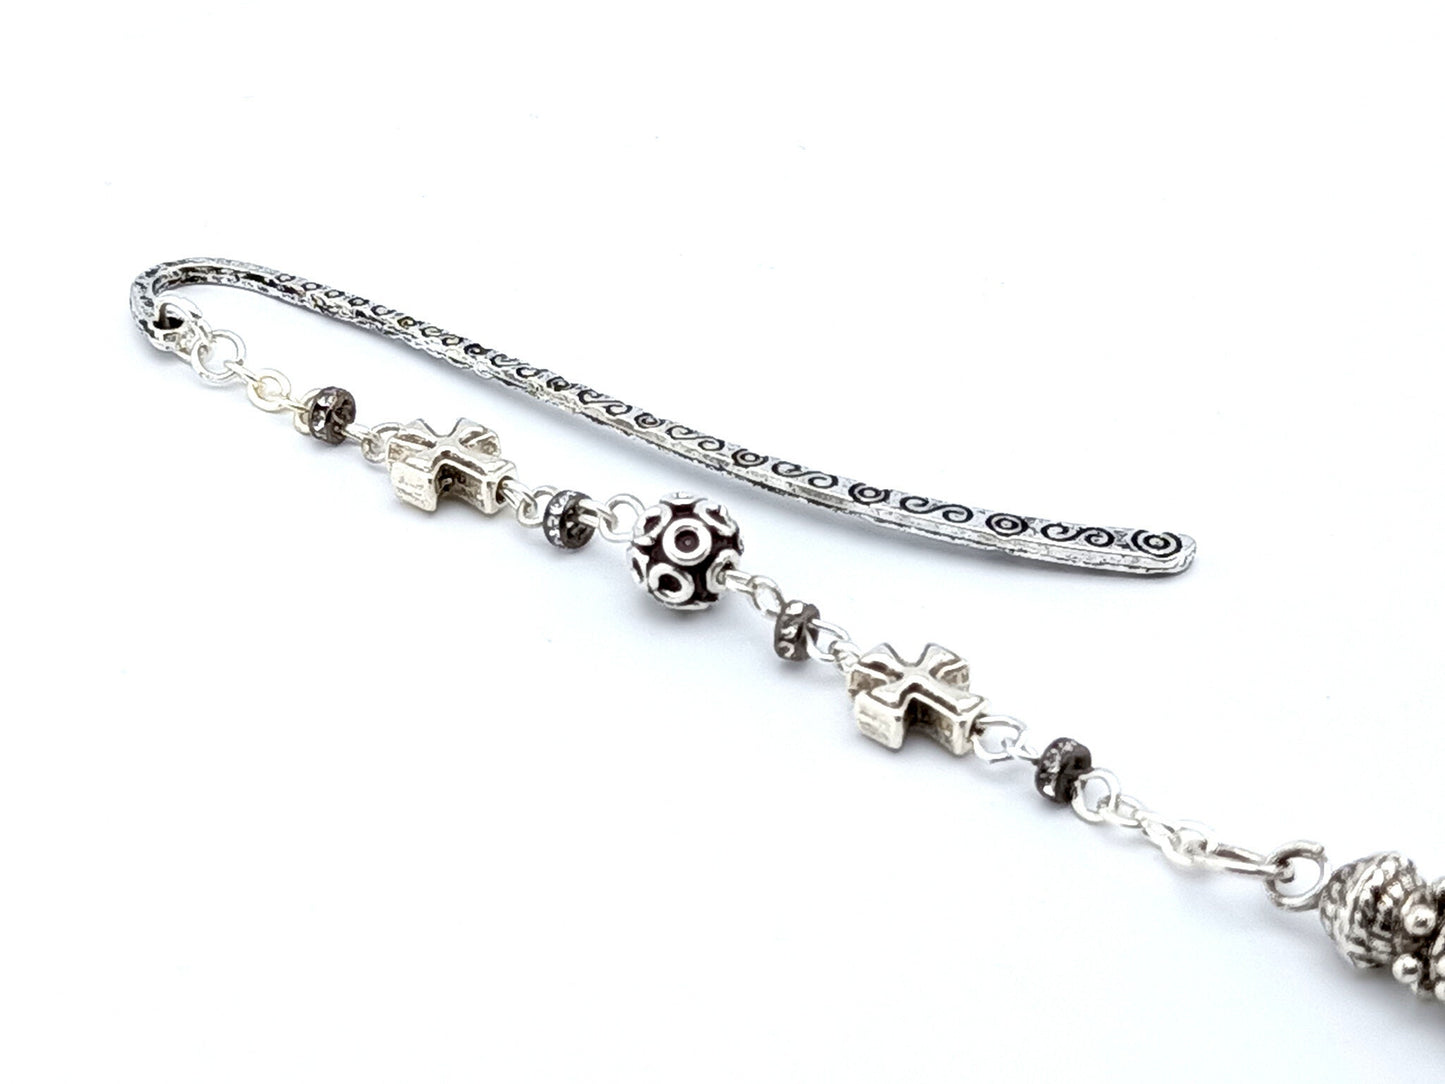 Tassel unique rosary beads Catholic religious bookmark.